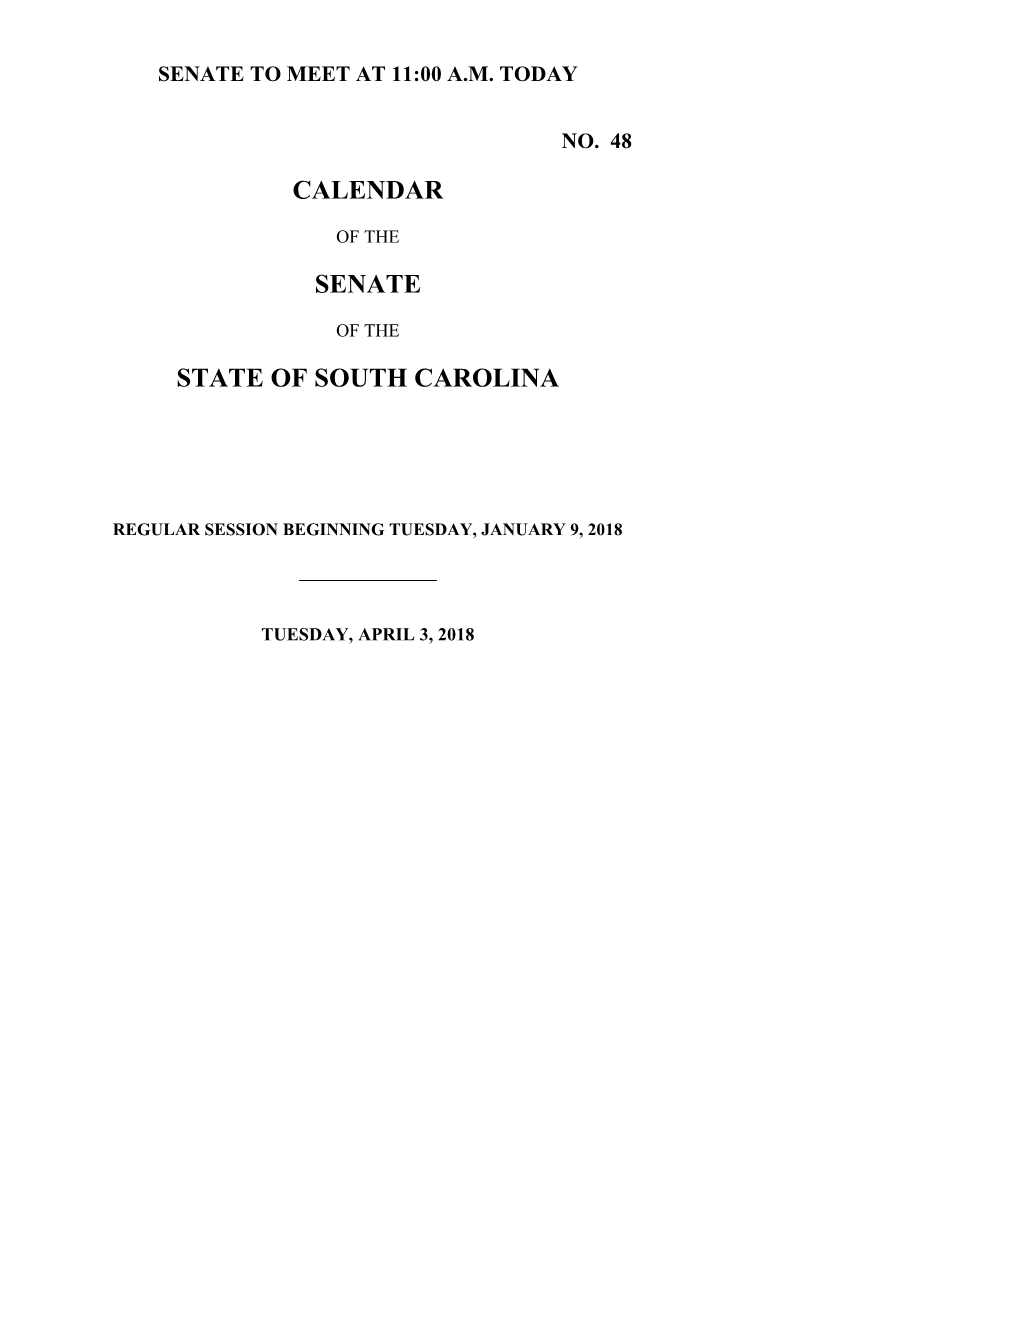 Senate Calendar for 4/3/2018 - South Carolina Legislature Online